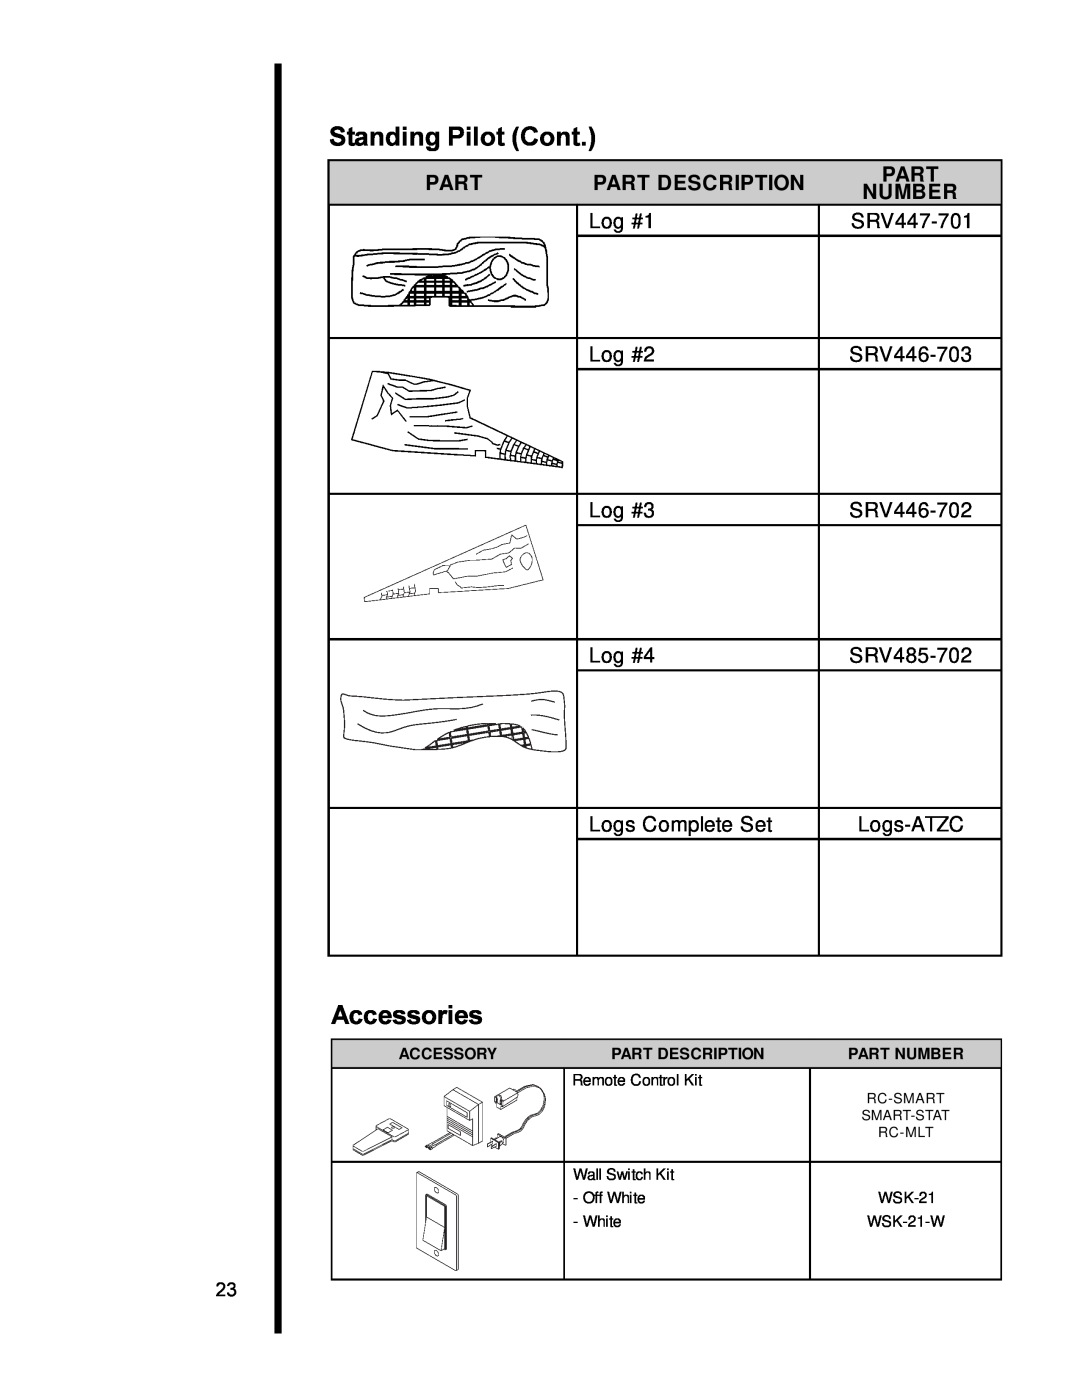 Heat & Glo LifeStyle AT-ZC Standing Pilot Cont, Accessories, Part Description, Number, Log #1, SRV447-701, Log #2 